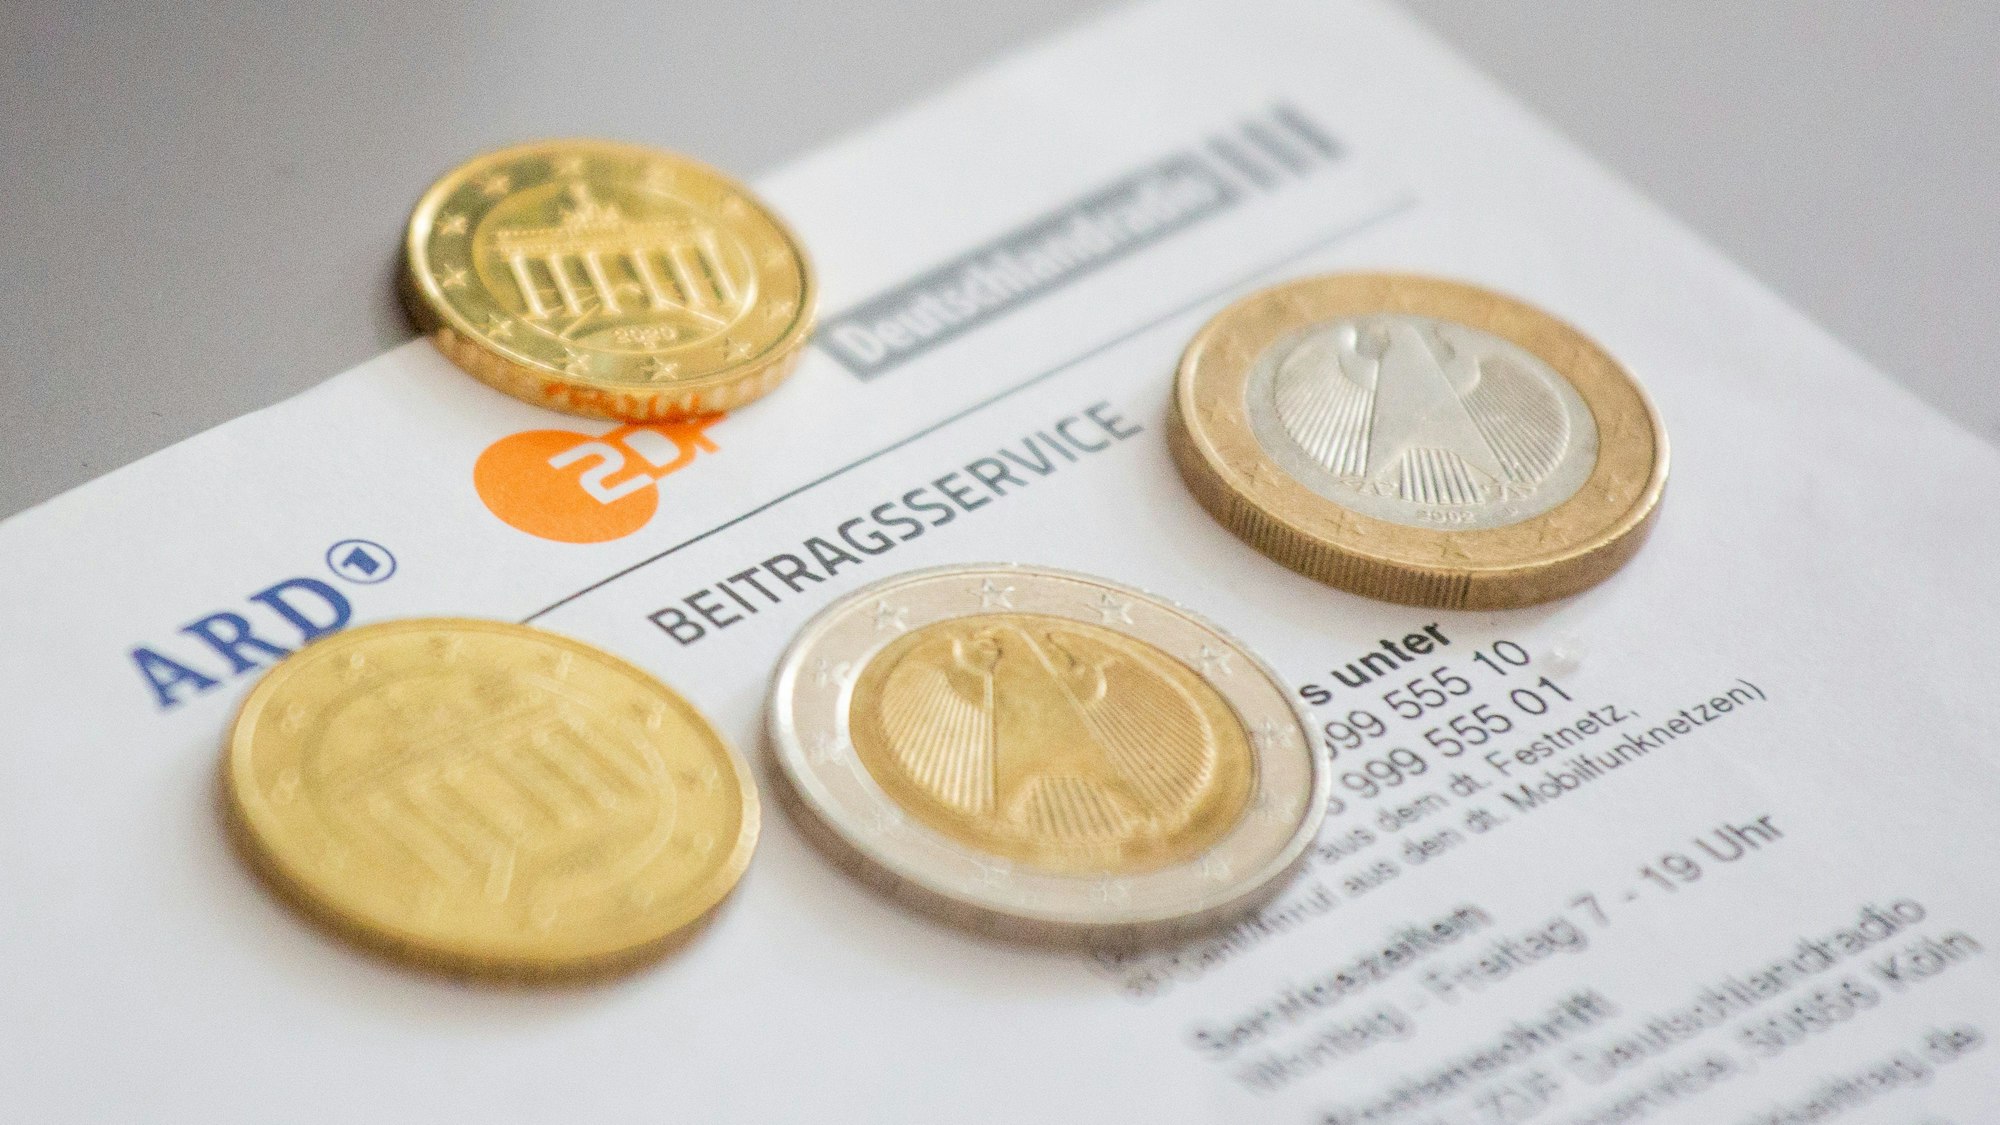 Euromünzen liegen auf einem Anschreiben zur Anmeldung für die Rundfunkgebühren, neben den Logo von ARD, ZDF und Deutschlandfunk.